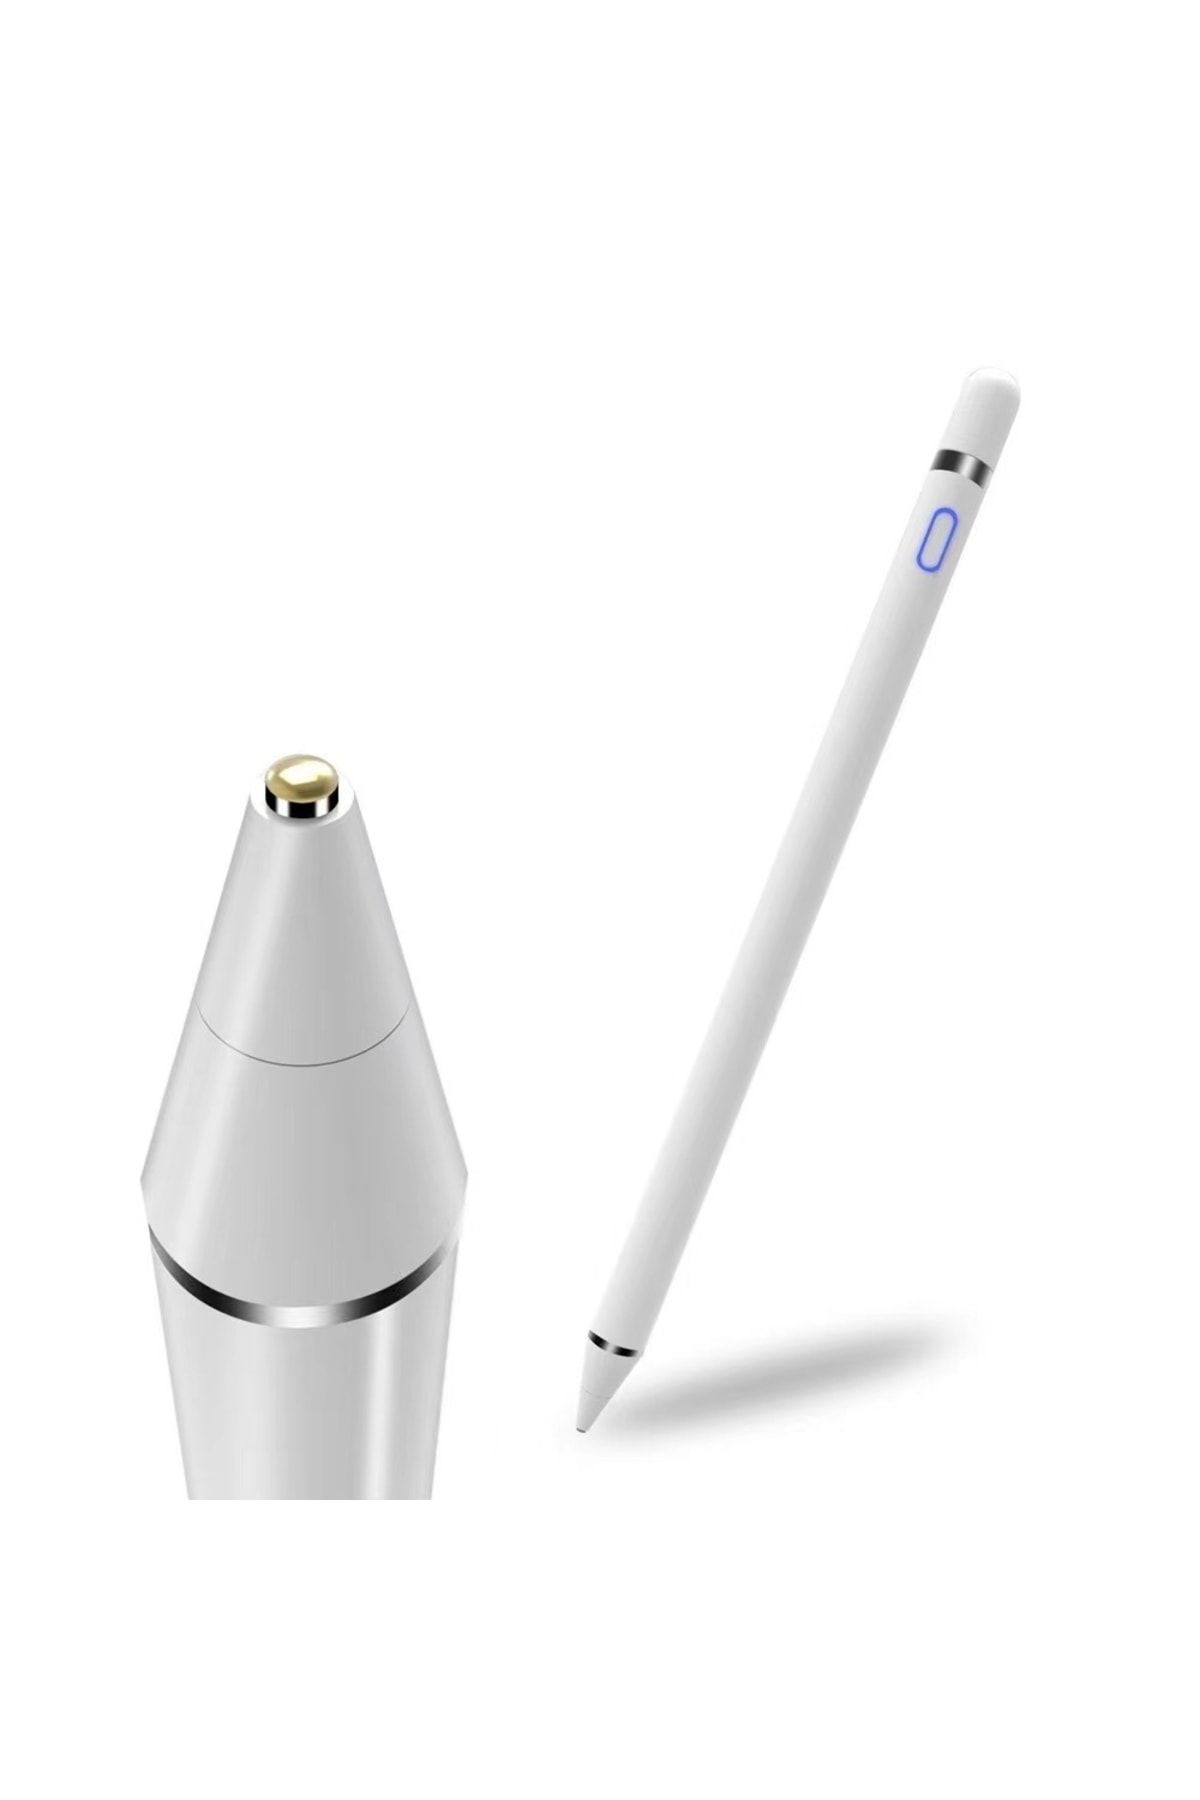 UnDePlus Pencil 08 Stylus Kapasitif Dokunmatik Kalem Tüm Cihazlar Telefon Ile Uyumlu Çizim Tasarım Tablet